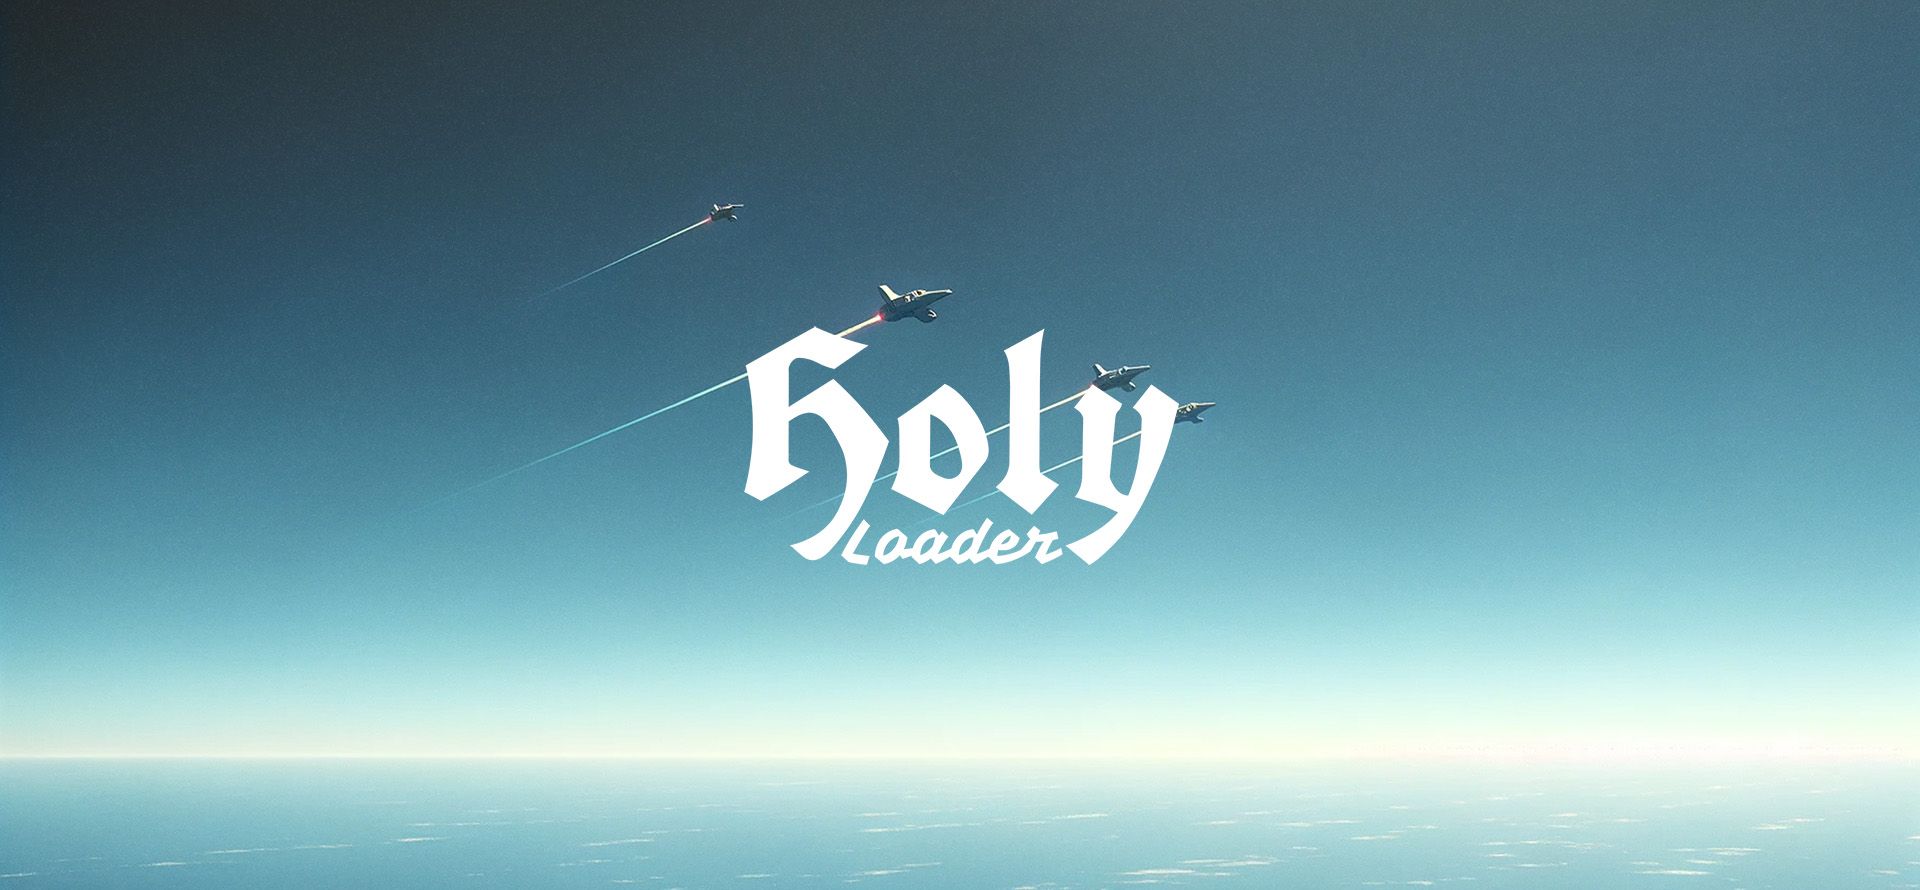 Holy Loader